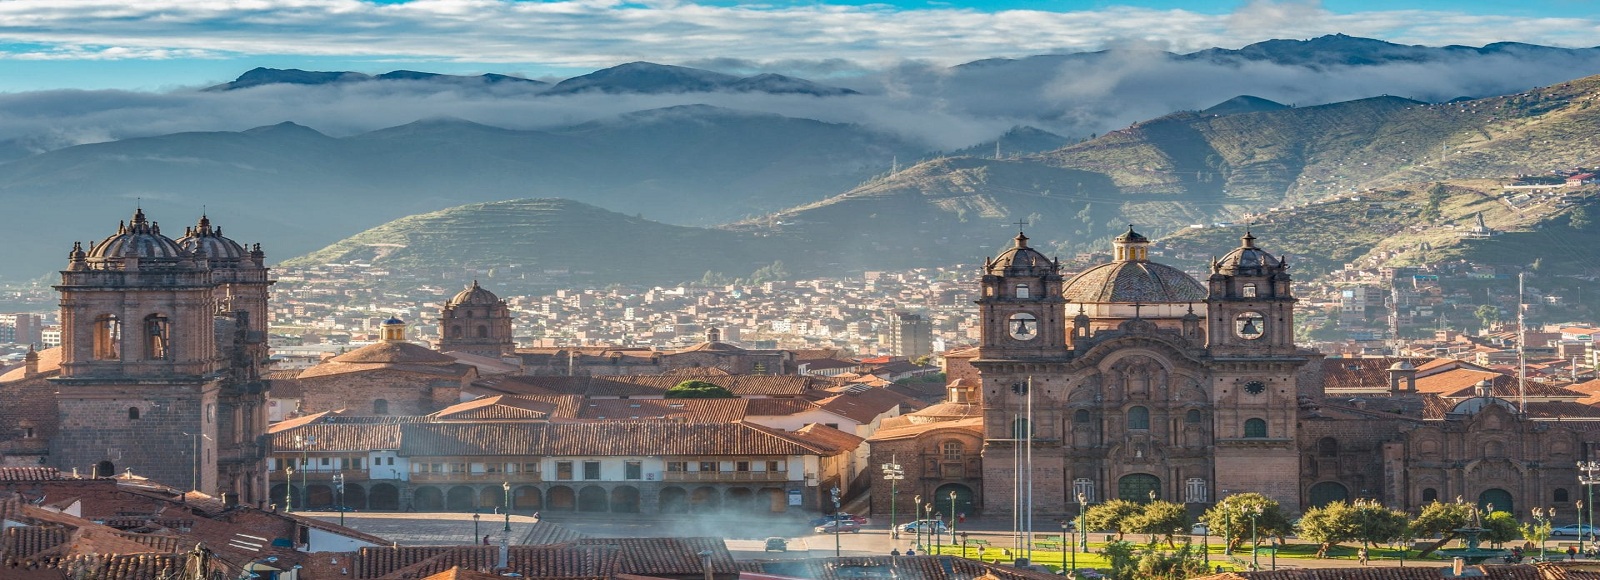 Ofertas de Traslados en Cuzco. Traslados económicos en Cuzco 